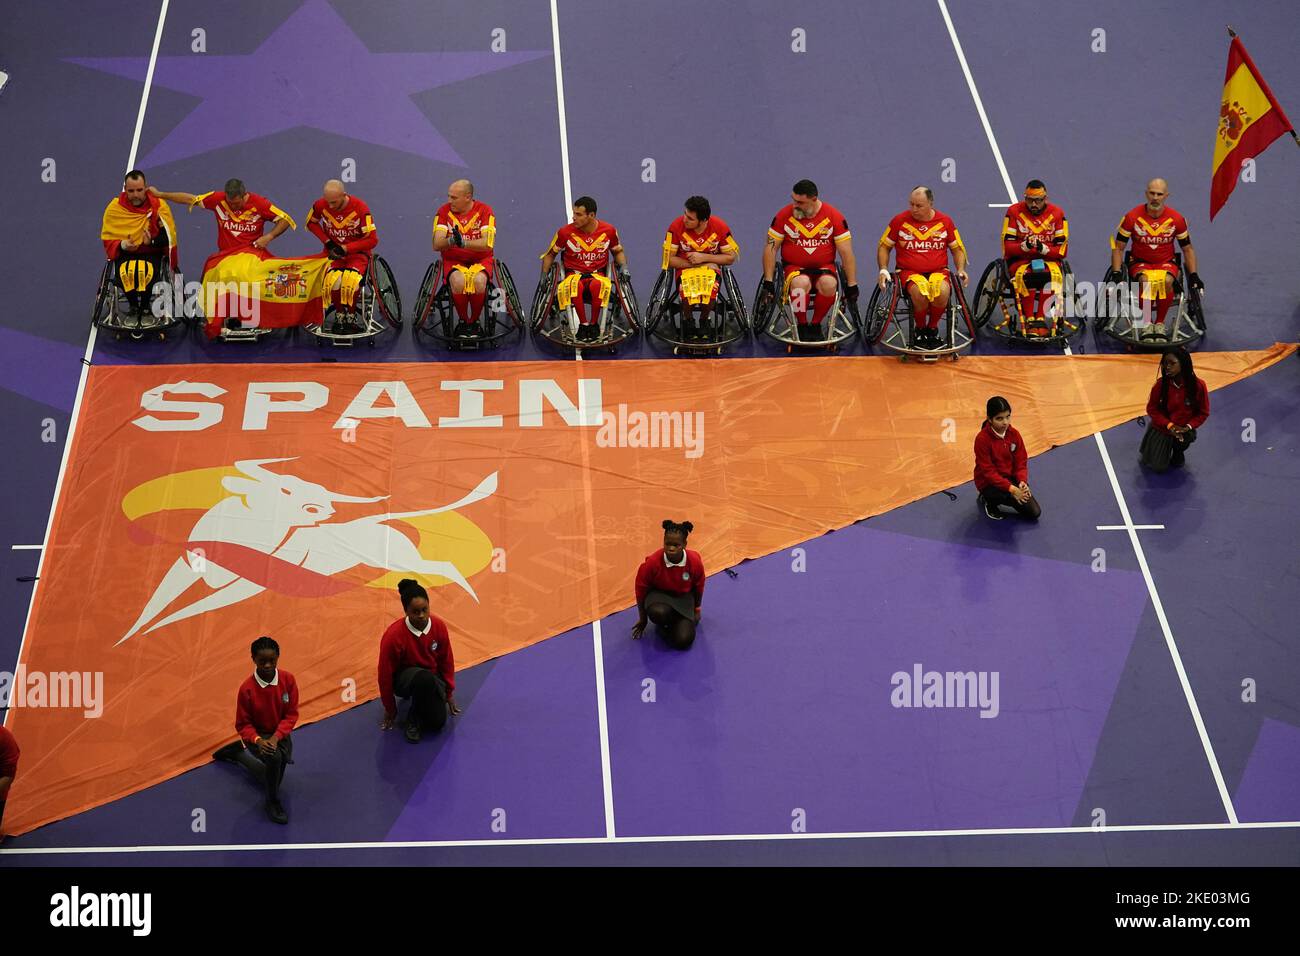 I giocatori si allineano prima che il gruppo di Coppa del mondo di Rugby Wheelchair League A una partita alla Copper Box Arena, Londra. Data immagine: Mercoledì 9 novembre 2022. Foto Stock